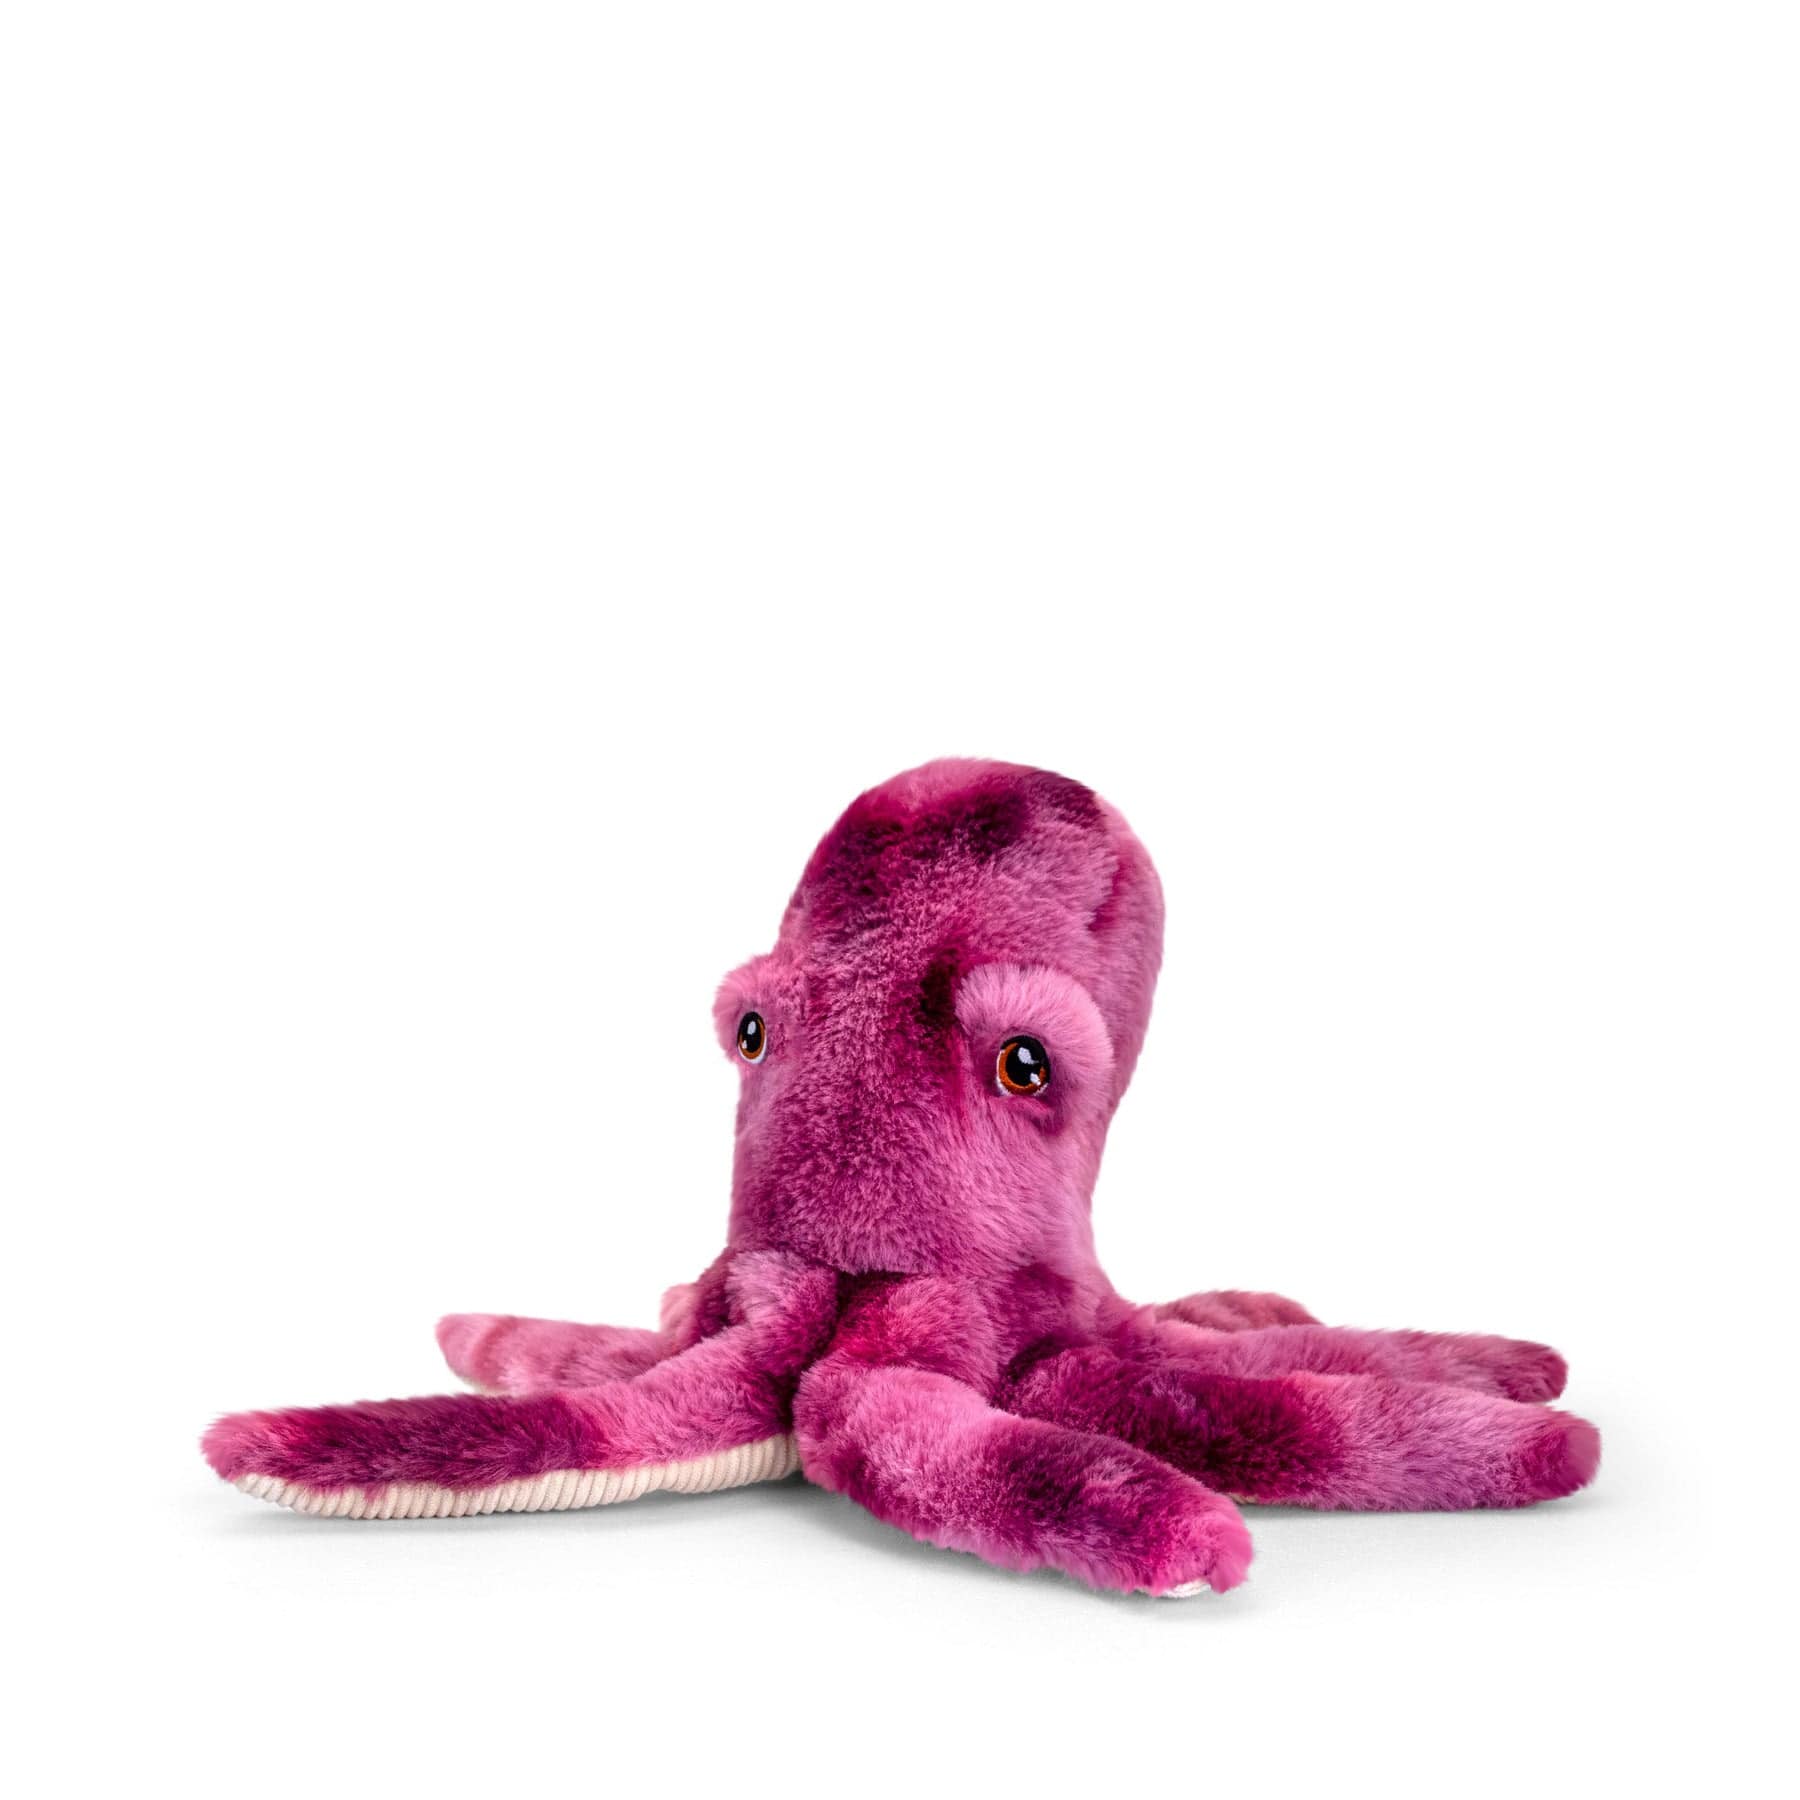 Plush purple octopus toy sitting isolated on white background